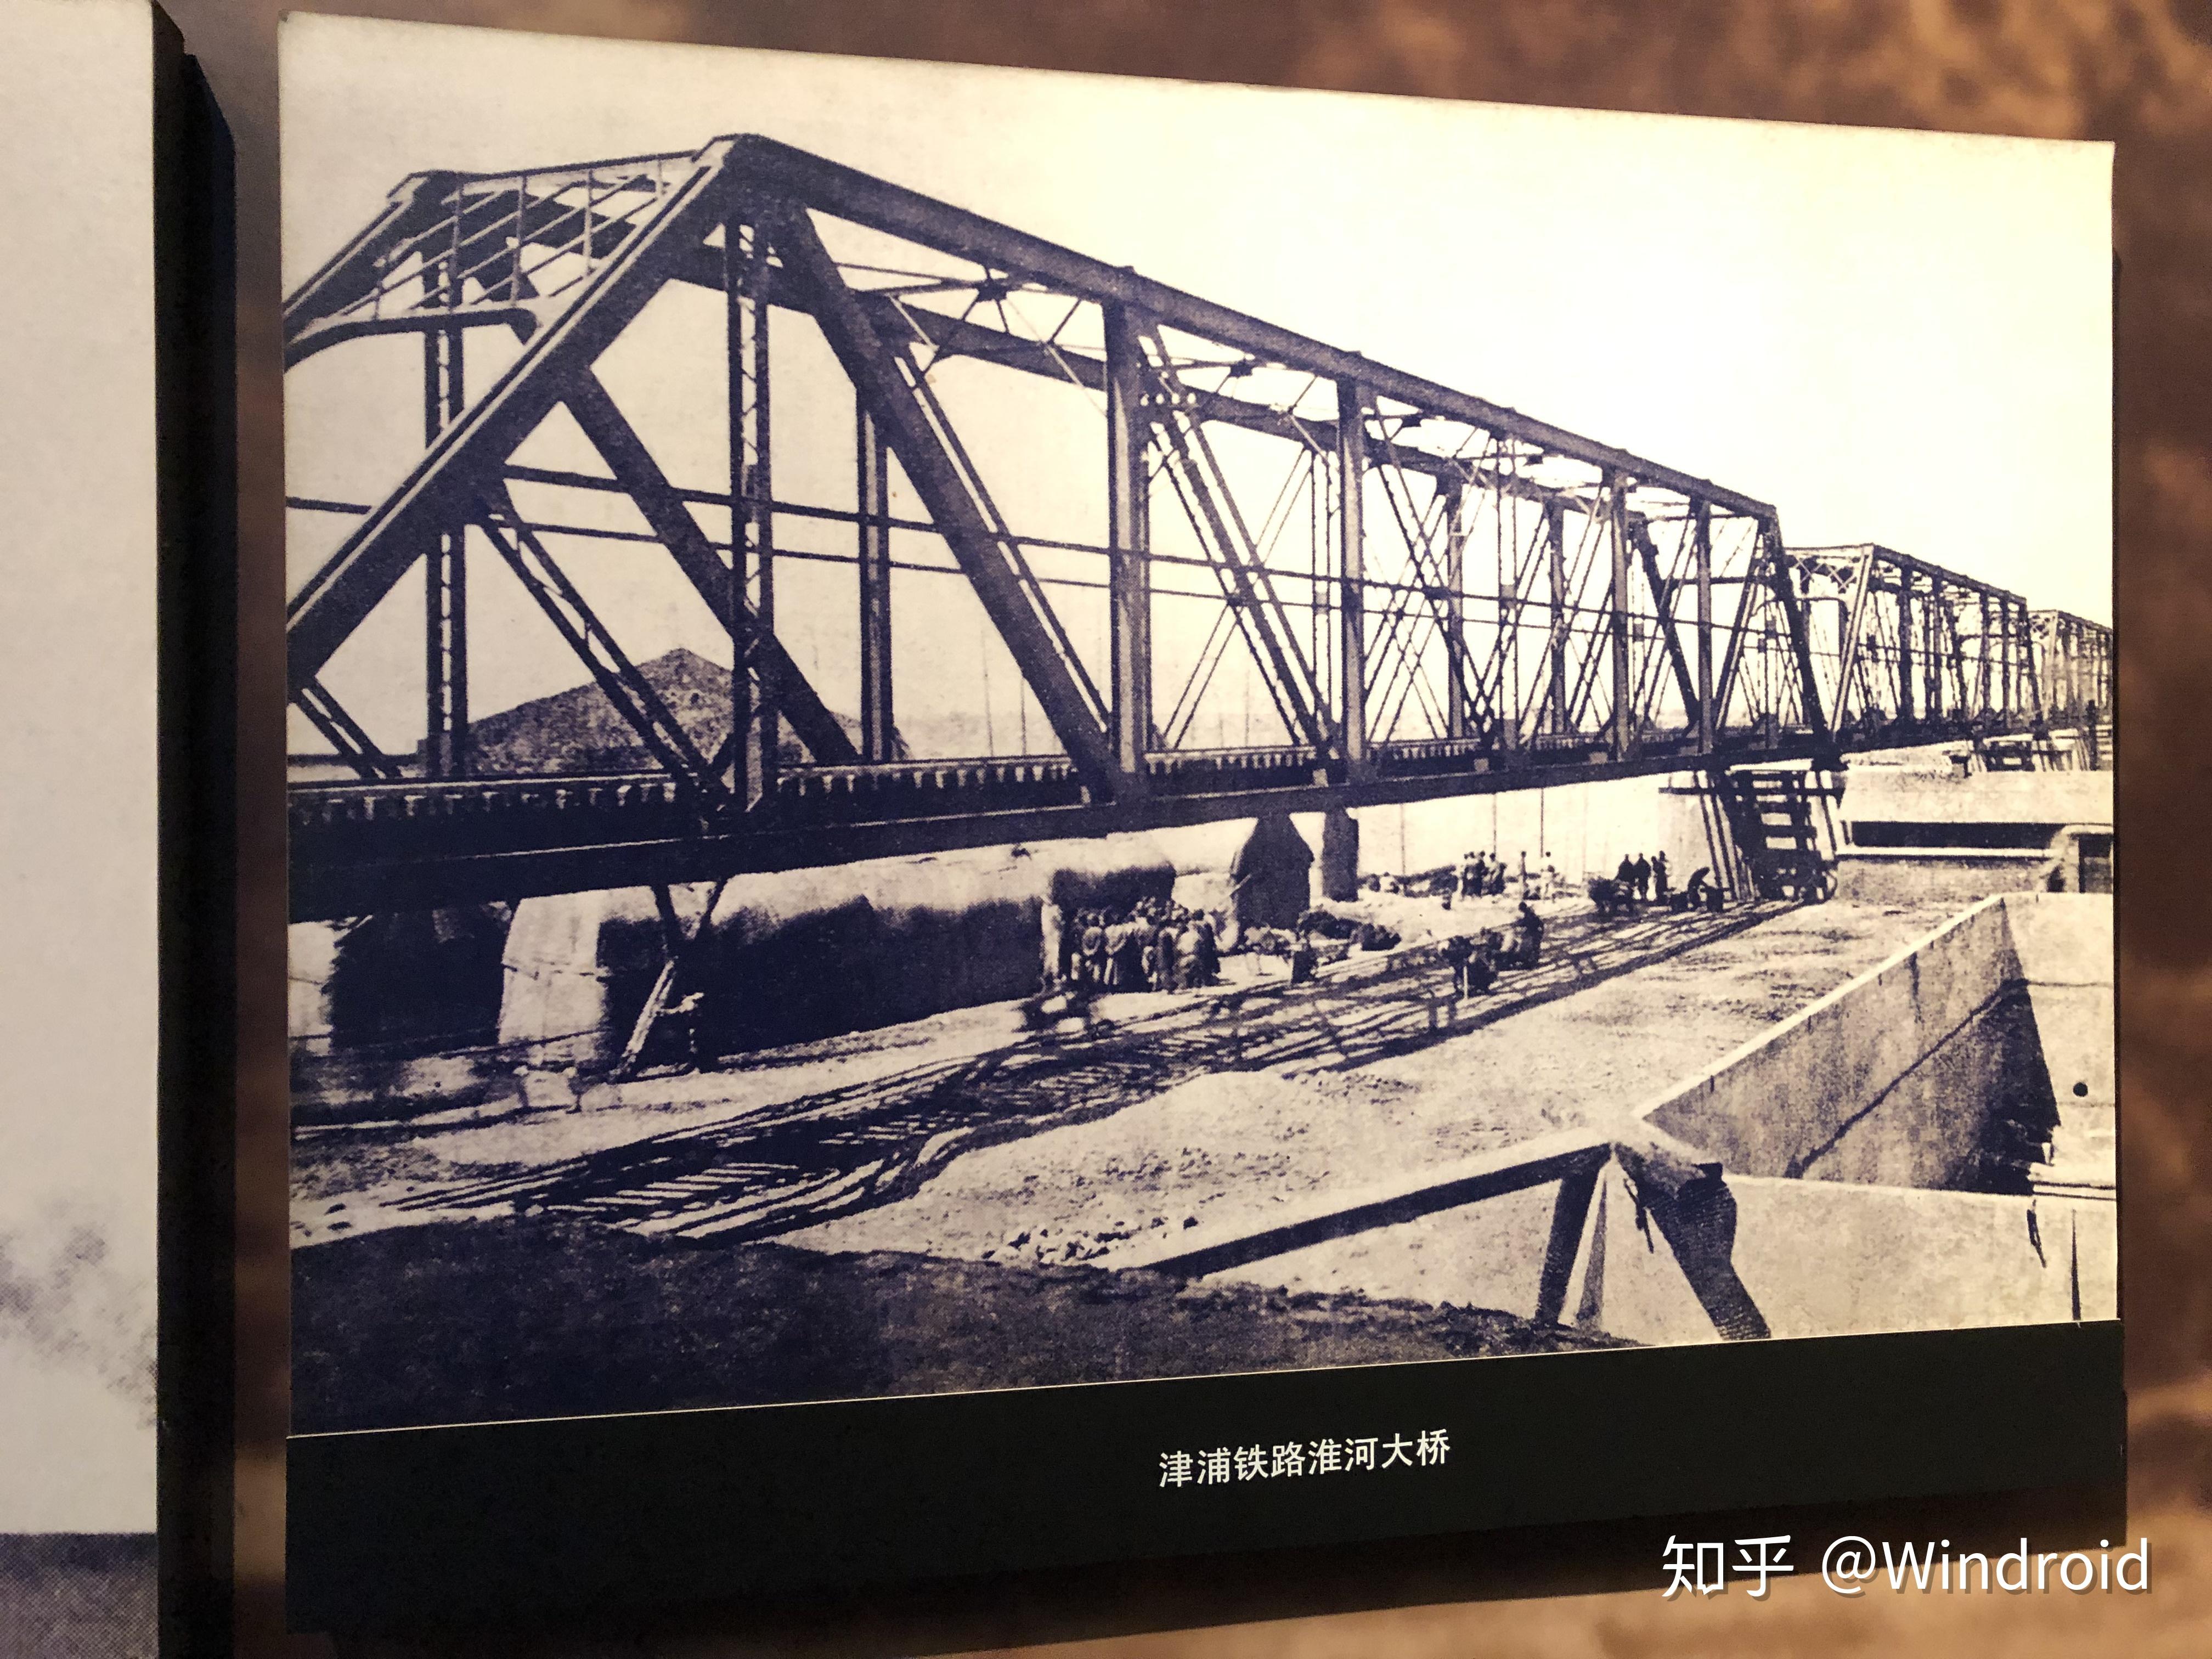 这张摄于蚌埠市博物馆抗日战争时期的江南铁路和淮南线钱塘江大桥前几